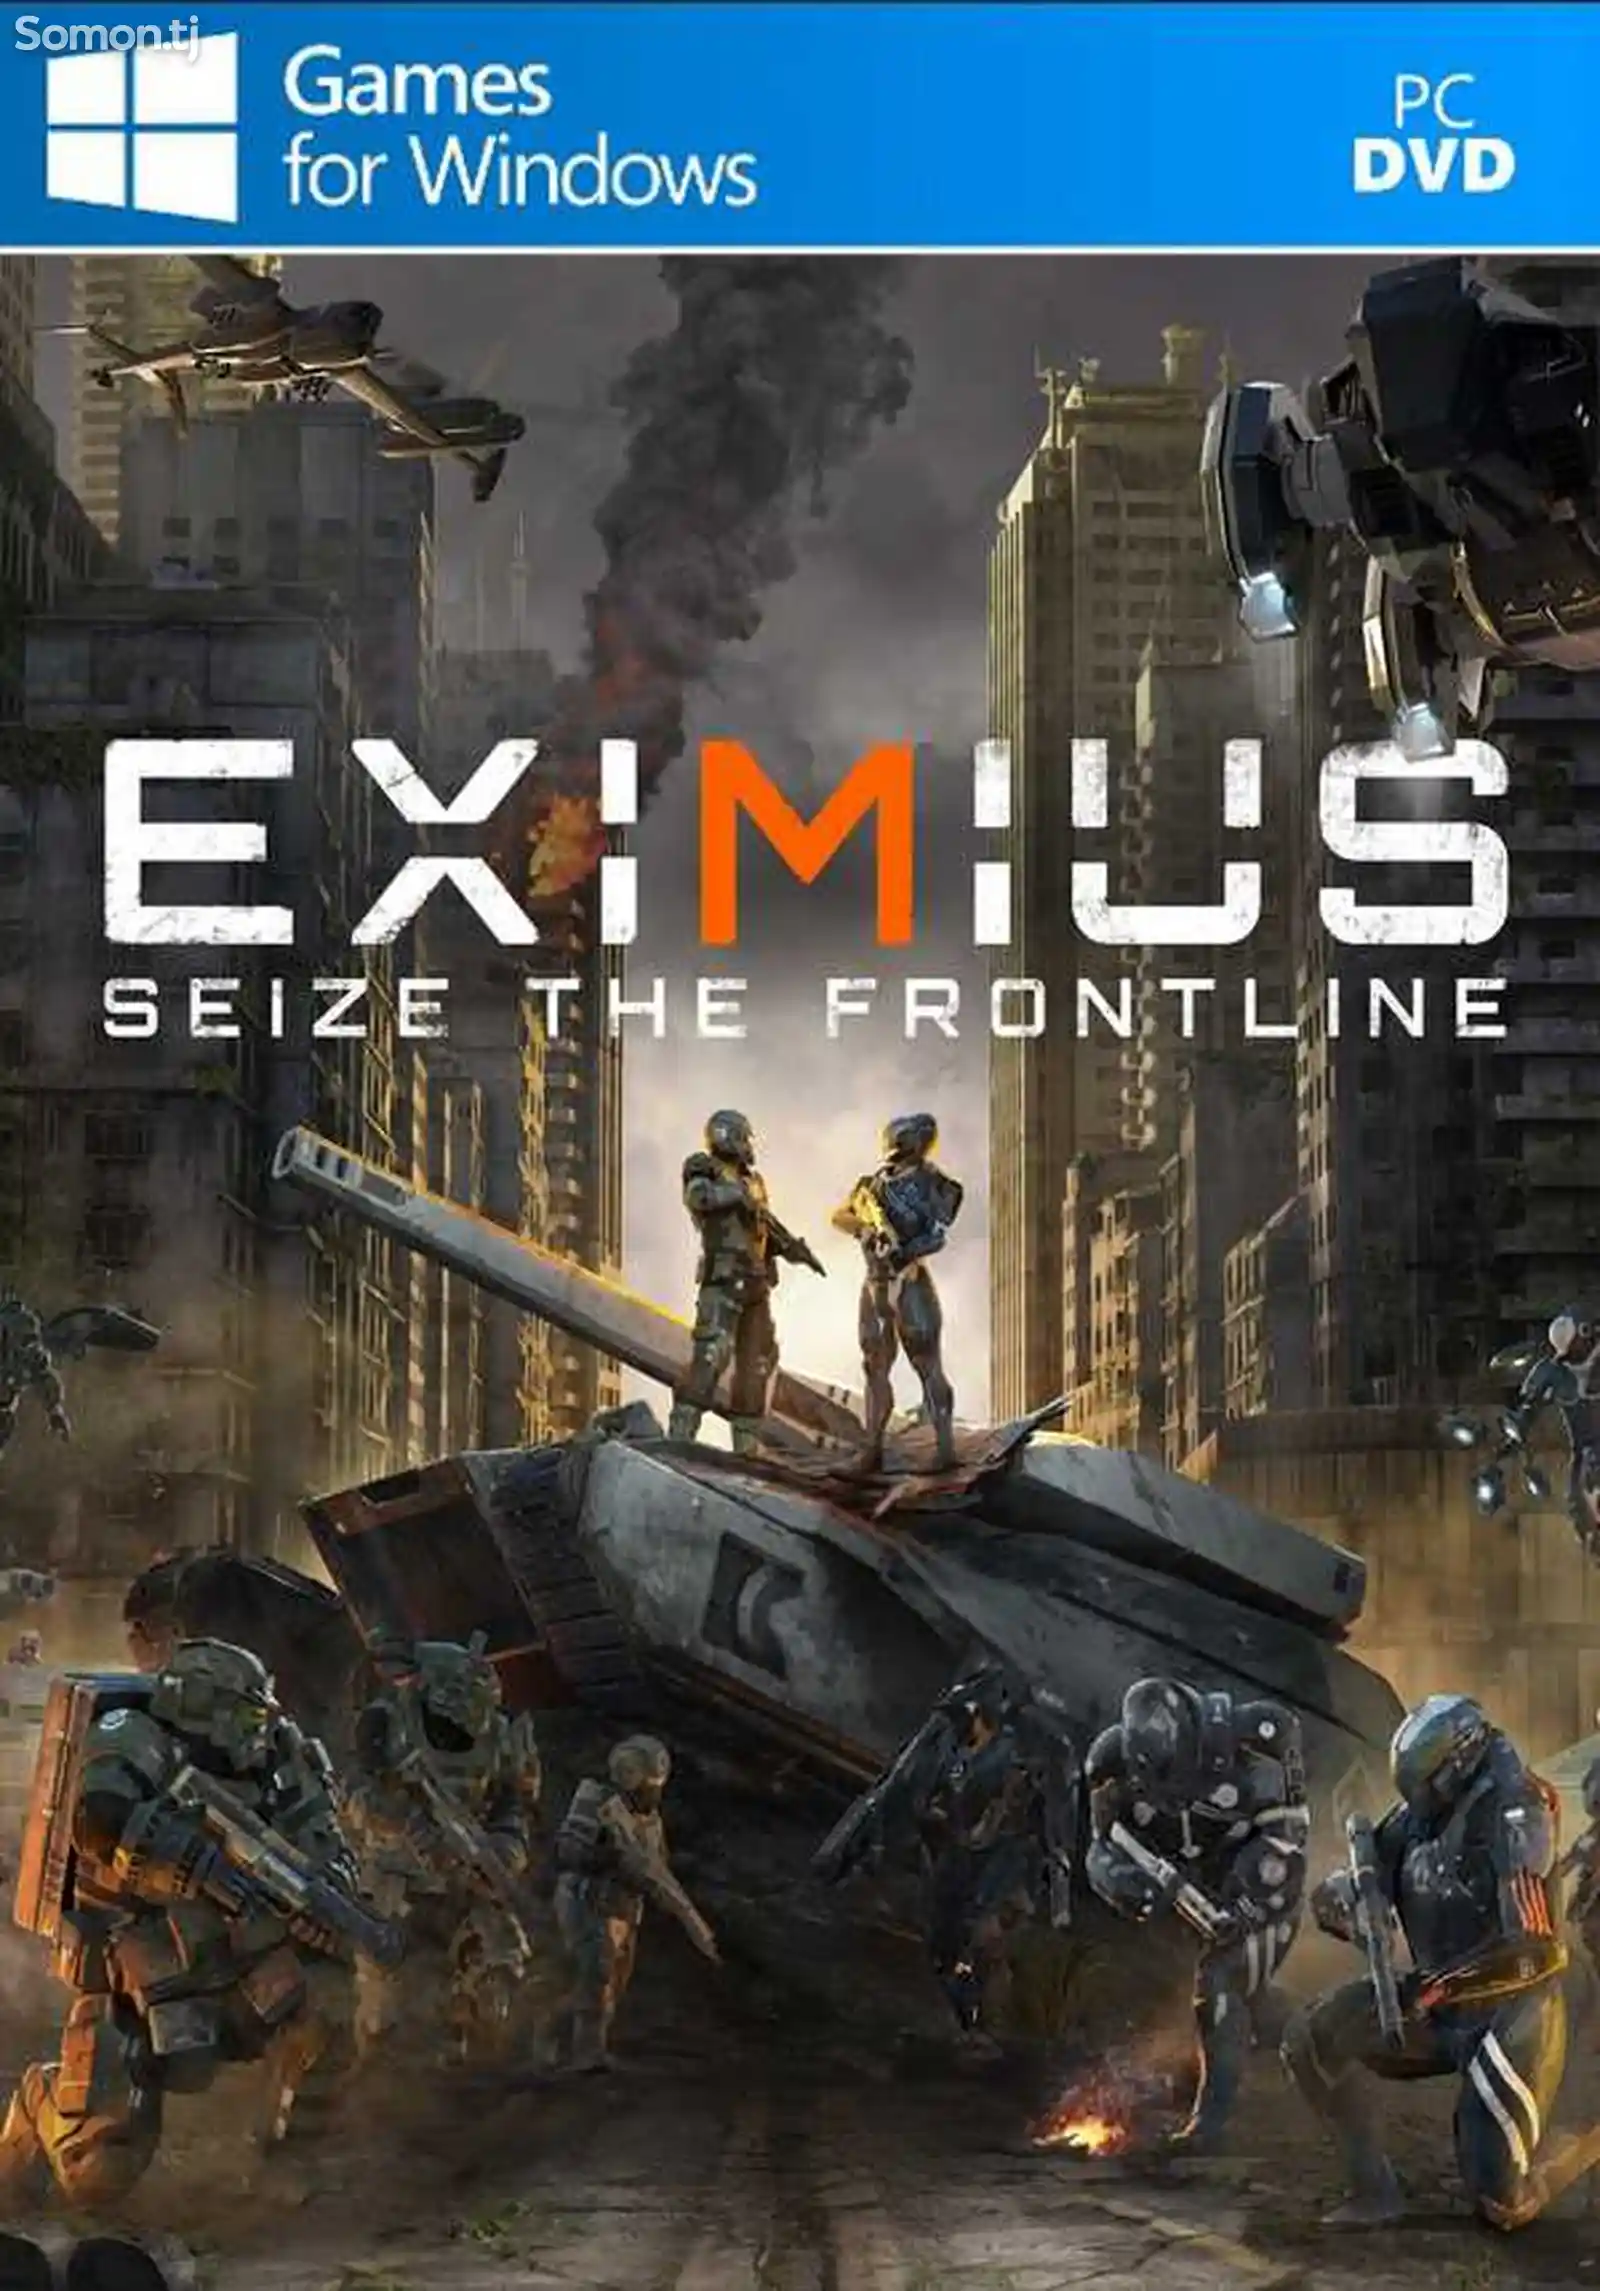 Игра Eximius seize the frontline для компьютера-пк-pc-1